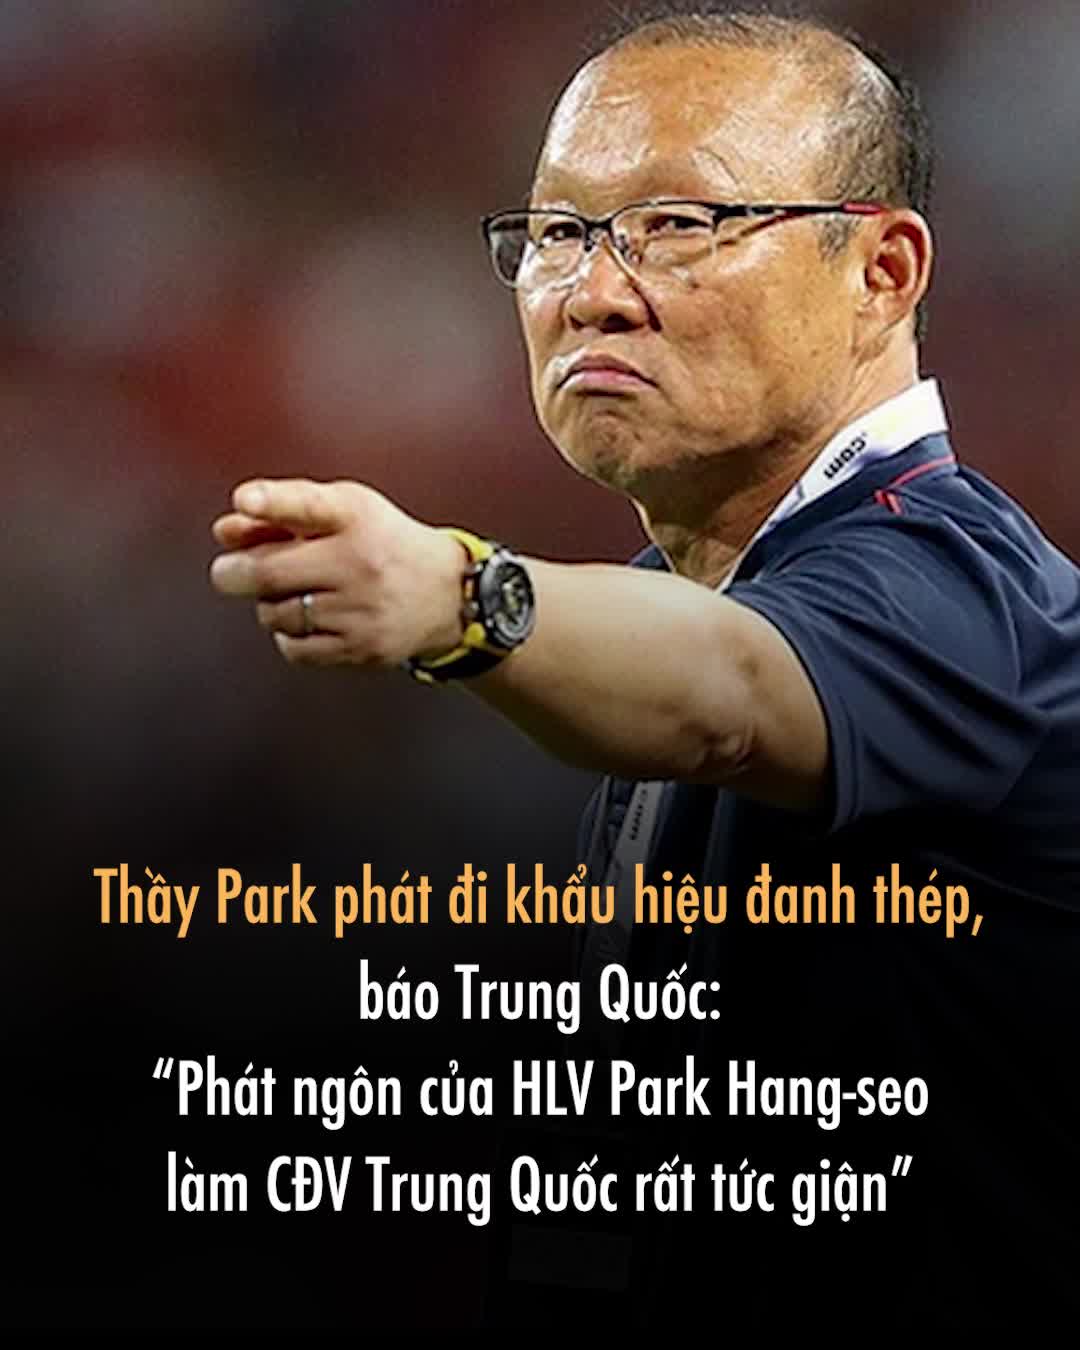 Thầy Park phát đi khẩu hiệu đanh thép, báo Trung Quốc: “Phát ngôn của HLV Park Hang-seo làm CĐV Trung Quốc rất tức giận”